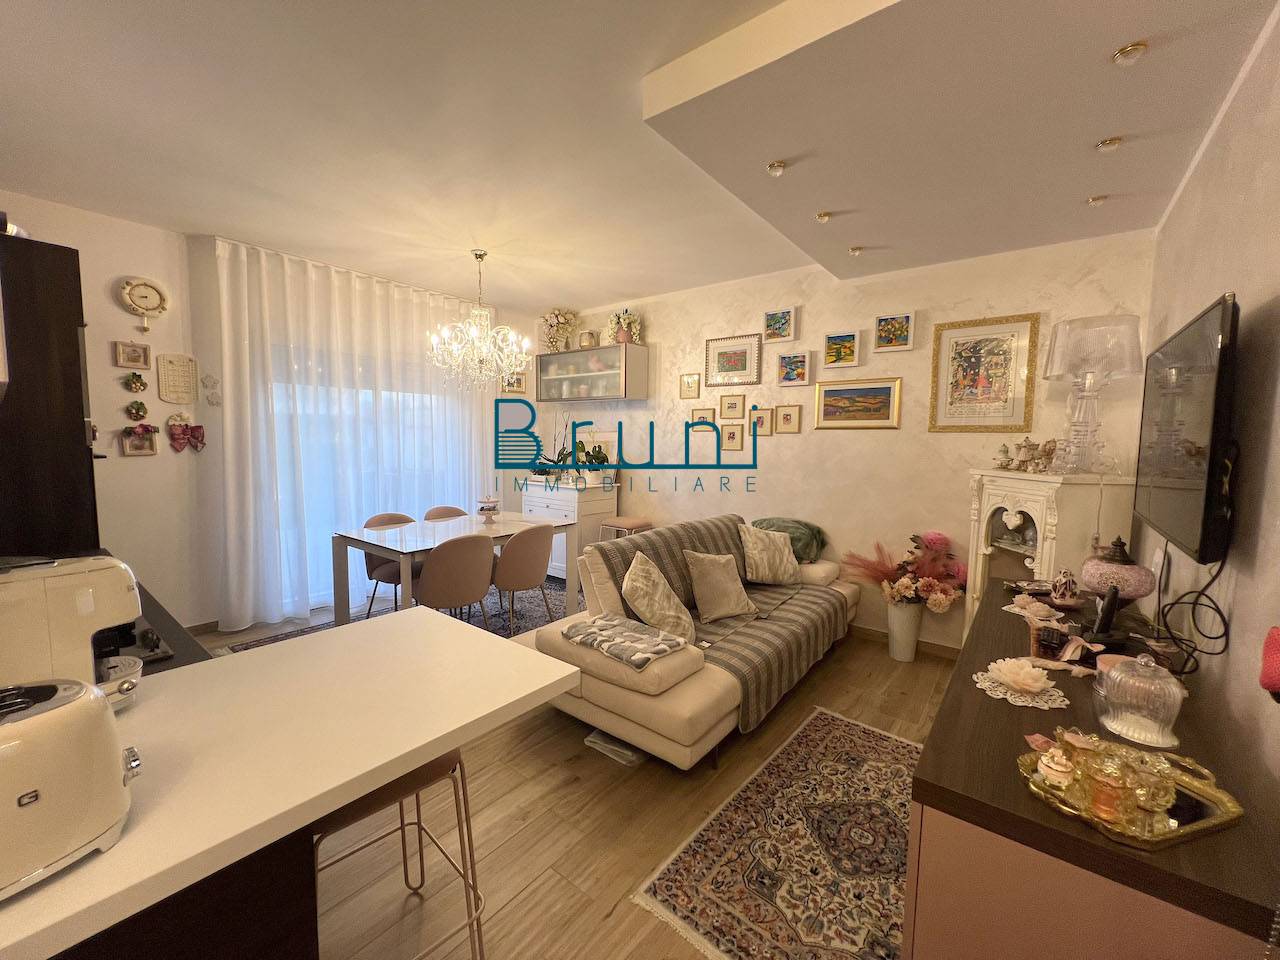 Appartamento in vendita a San Benedetto del Tronto, 3 locali, zona Località: PortodAscoli, prezzo € 225.000 | PortaleAgenzieImmobiliari.it